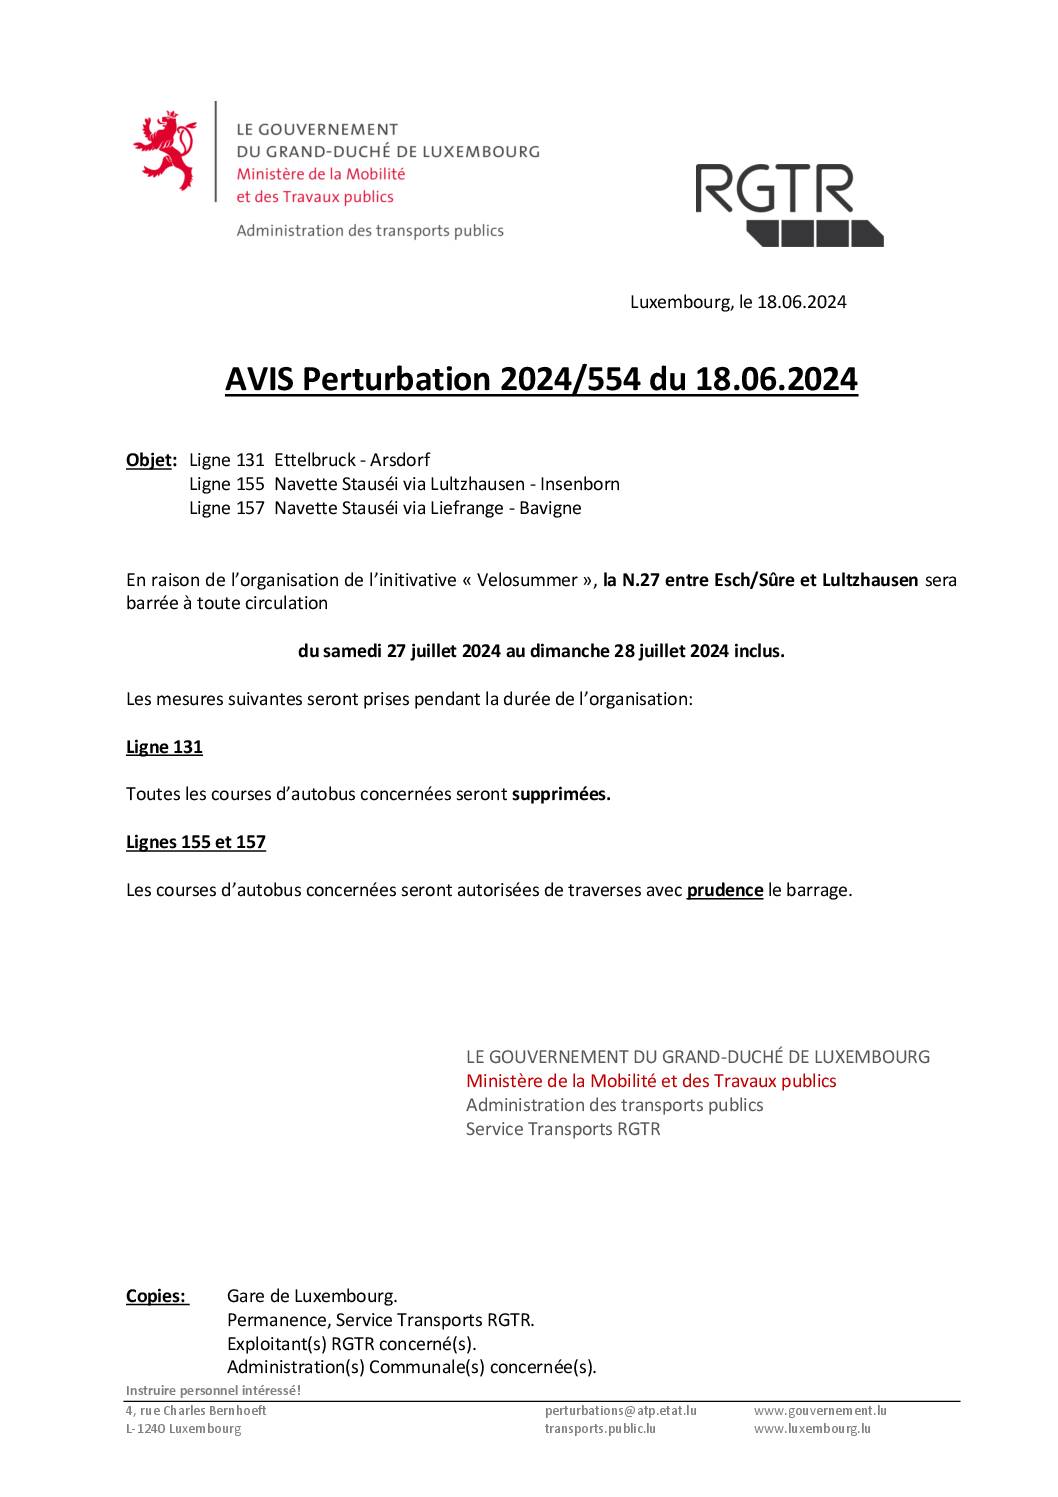 Perturbation 2024/554 – Lignes 131, 155 & 157 (du 27.07 au 28.07.2024 - Velosummer)